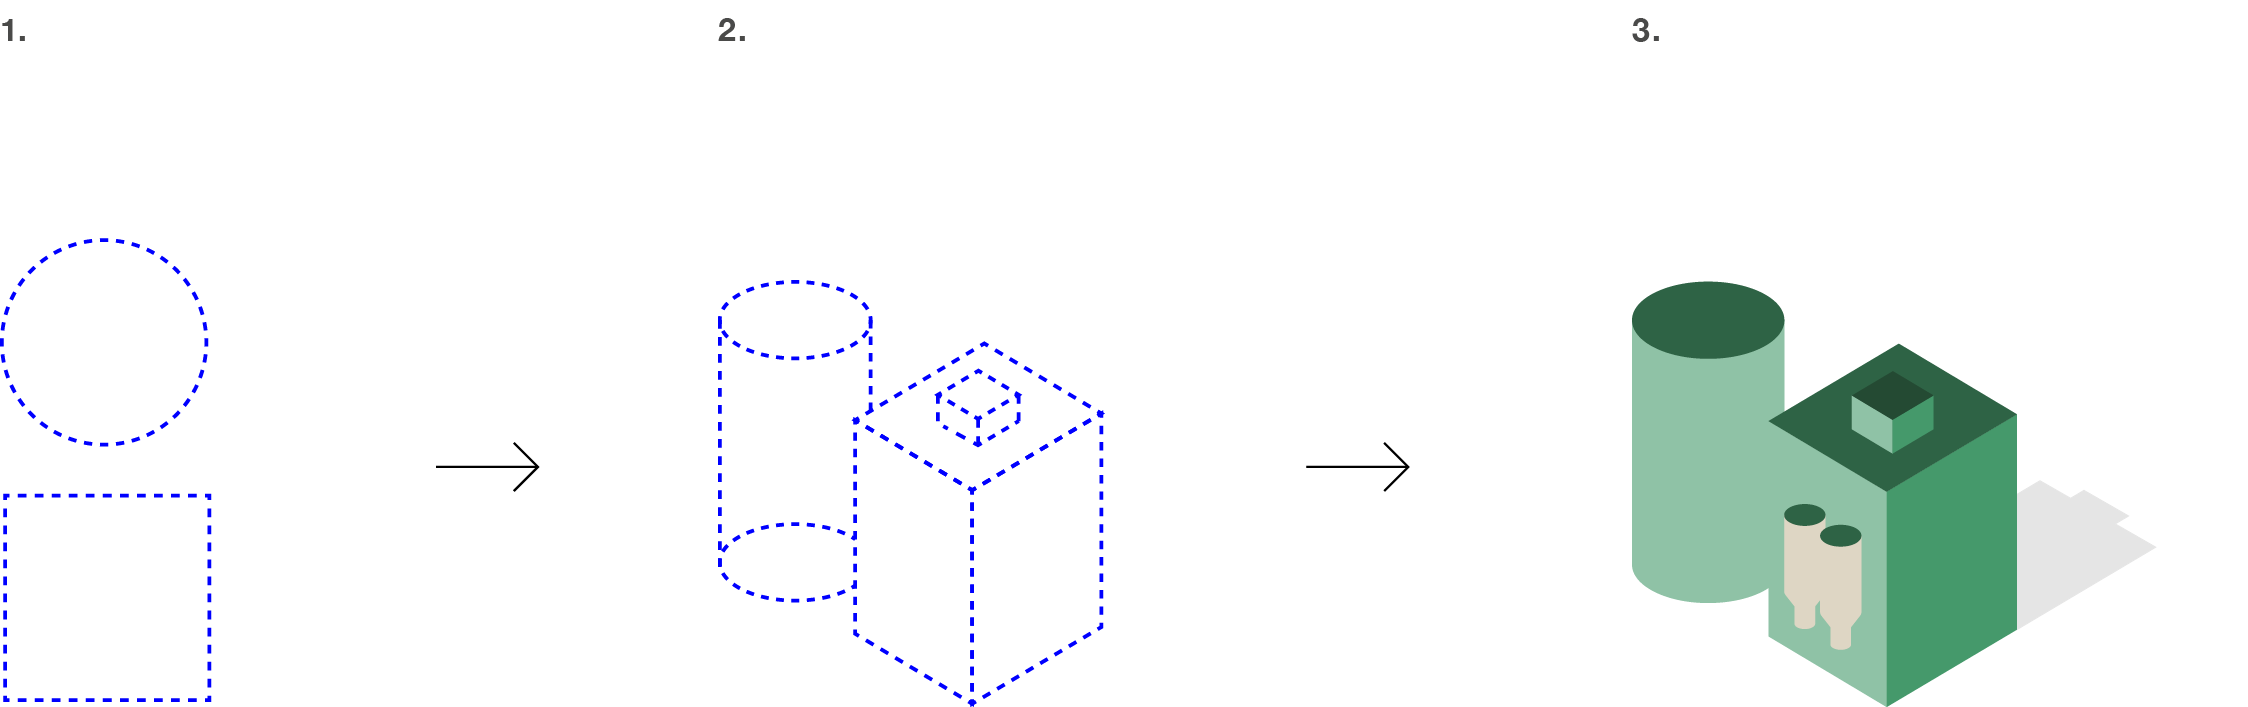 Exemplet visar i tre steg hur de två grundformerna, cirkeln och kvadraten, bildar en färdig tredimensionell illustration